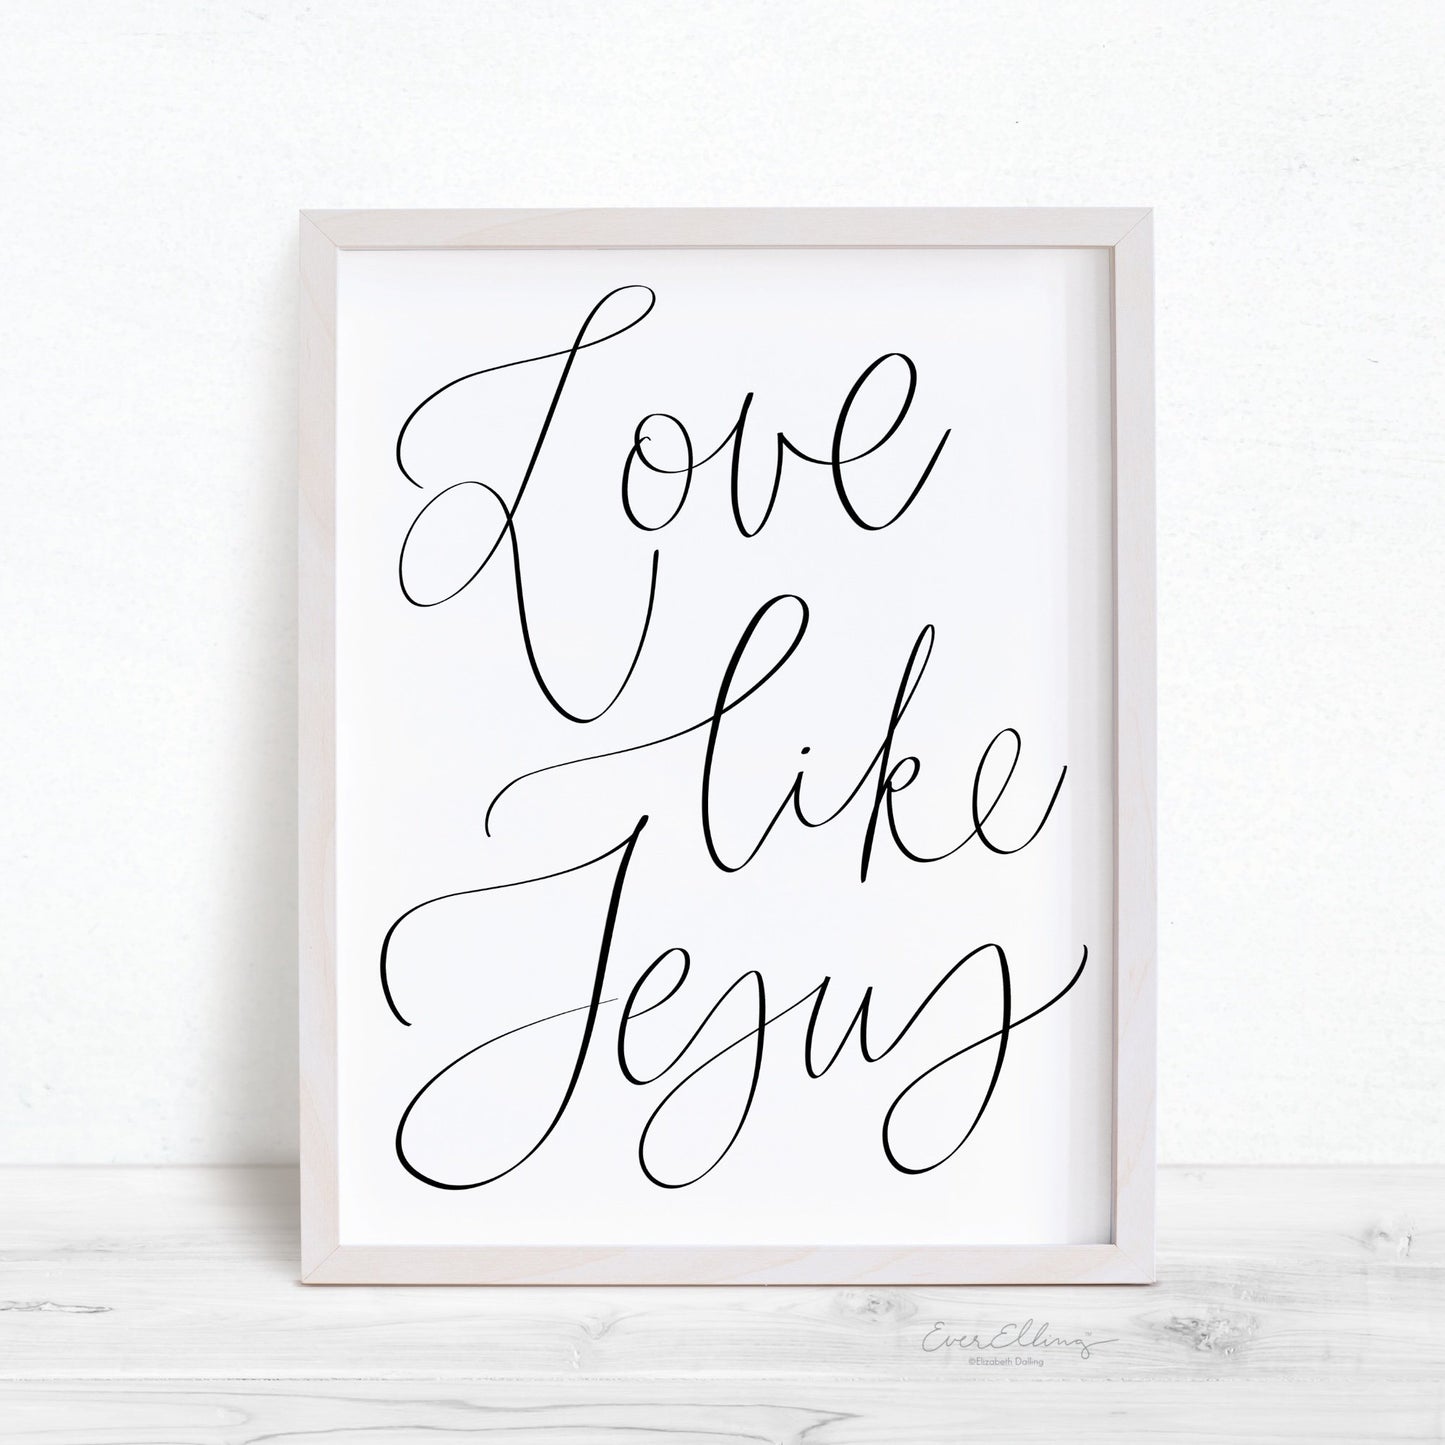 Love Like Jesus Print